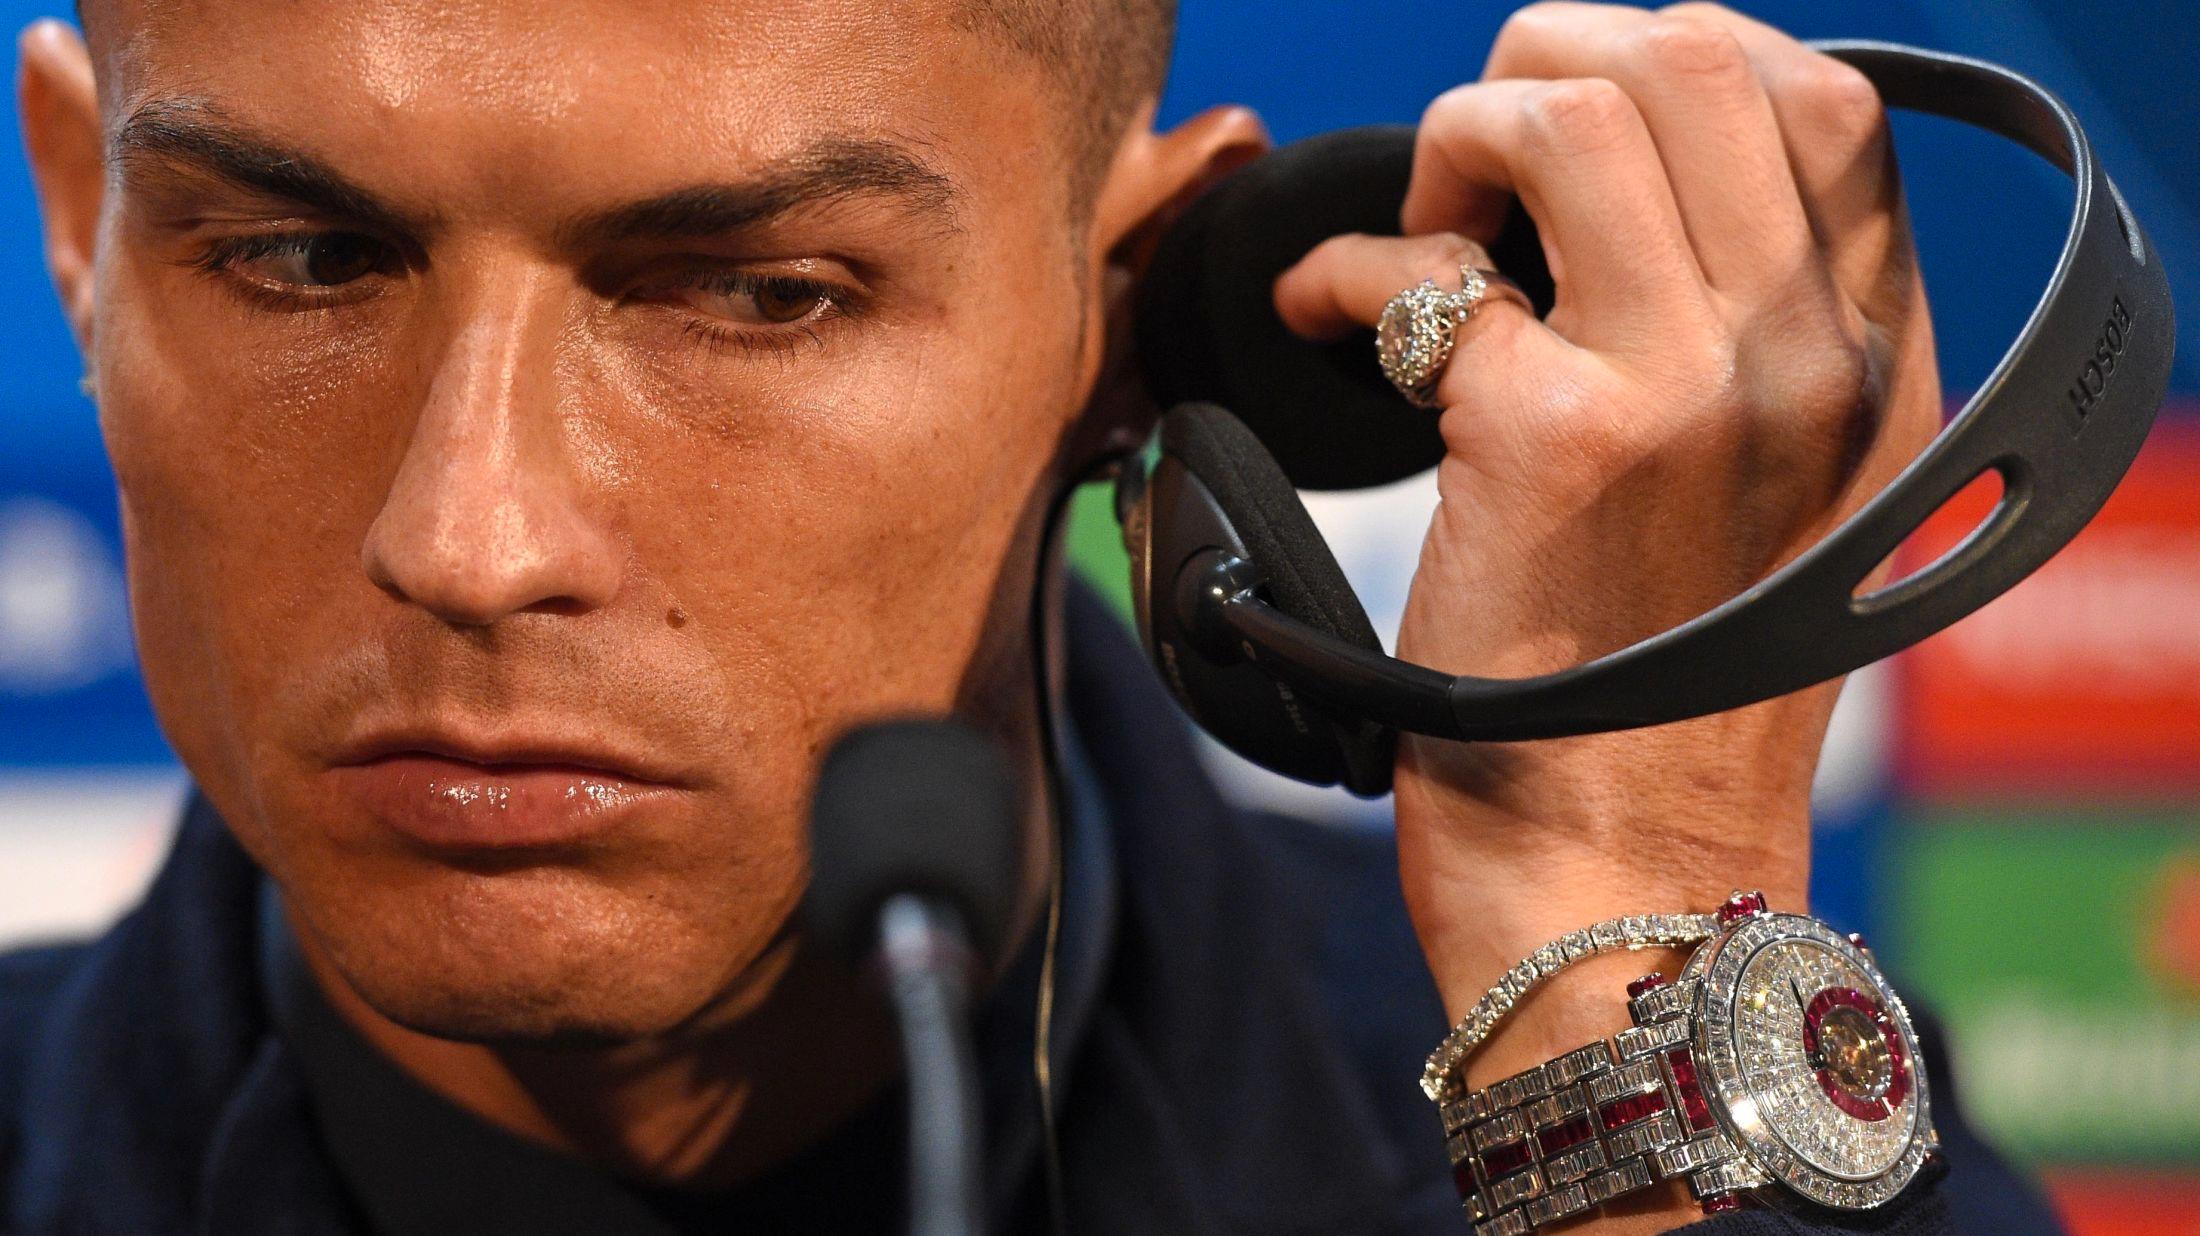 GLAD I BLING: Fotballspiller Cristiano Ronaldo prøvde ikke å gjemme sin nye klokke under en pressekonferanse i forkant av oppgjøret mot Manchester United. Foto: AFP.